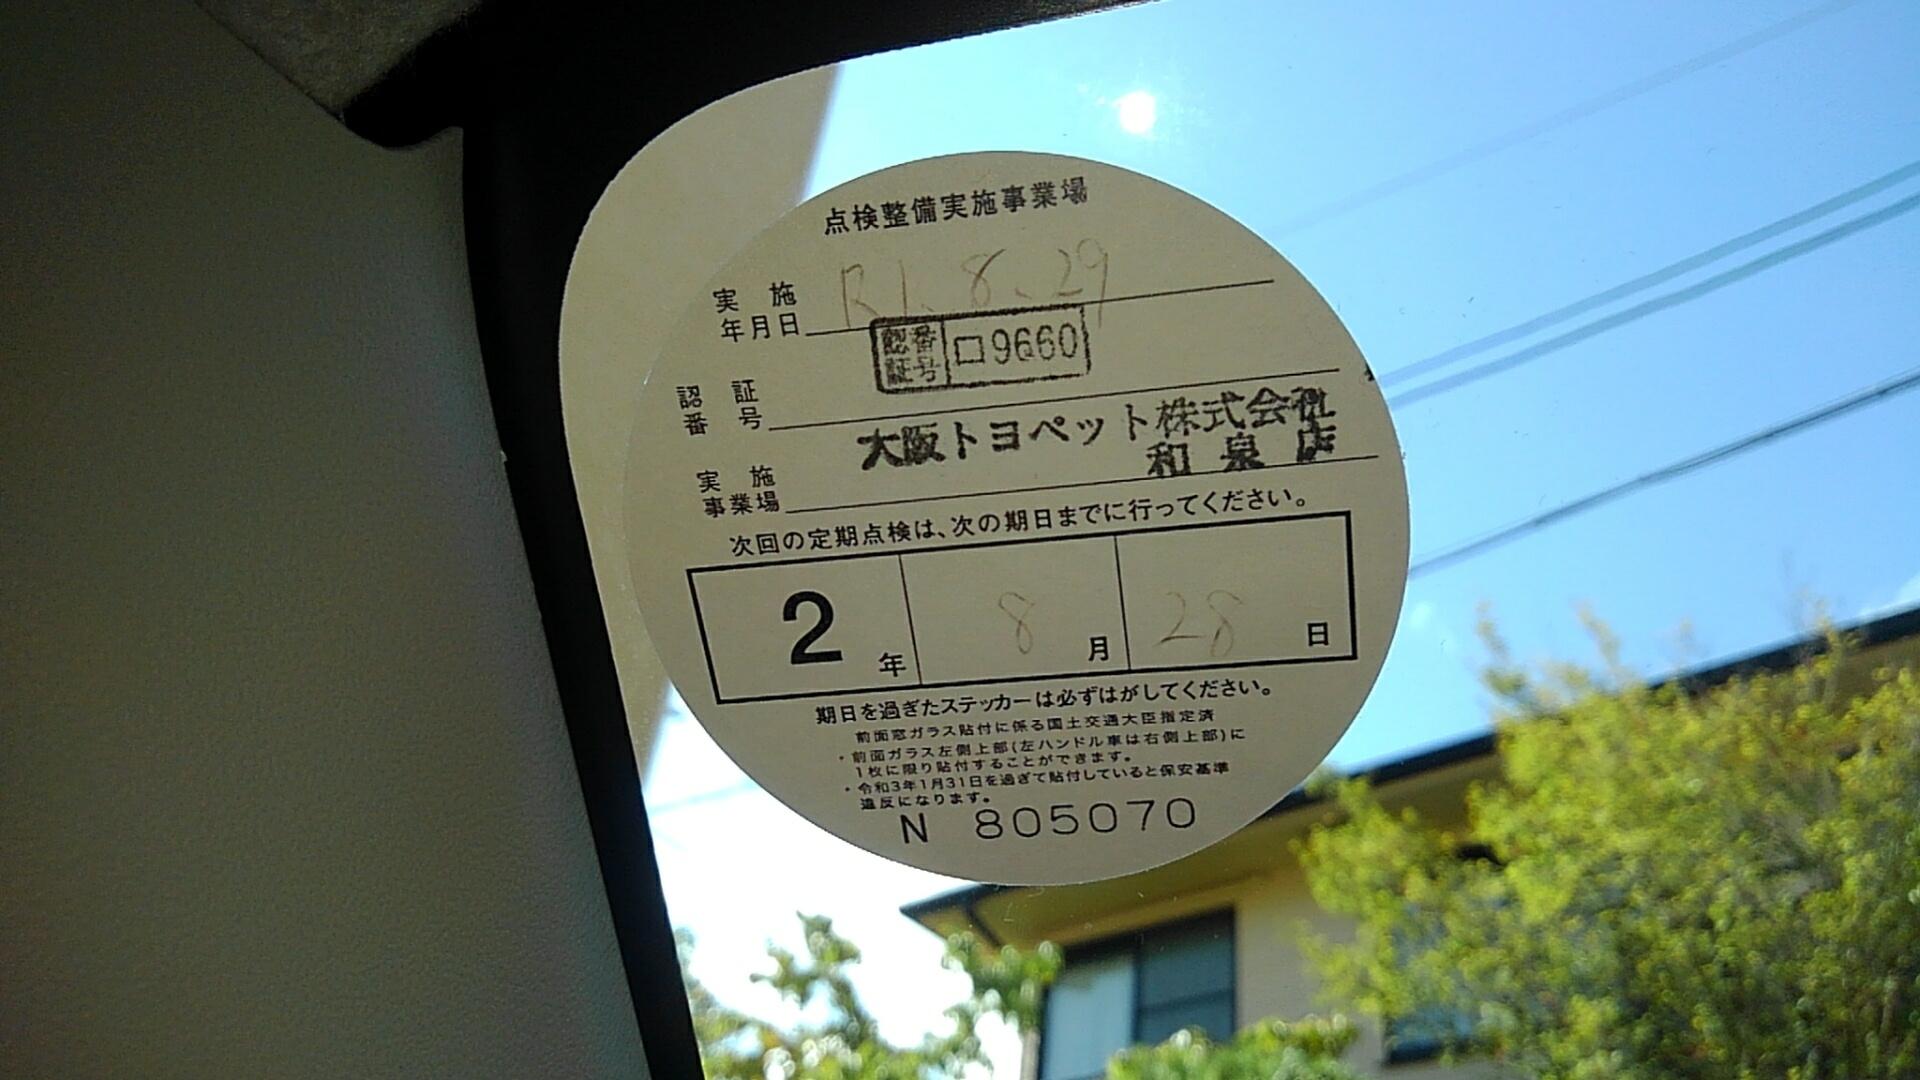 点検ステッカー 目安です Takezoの育児 中古車販売繁盛日記